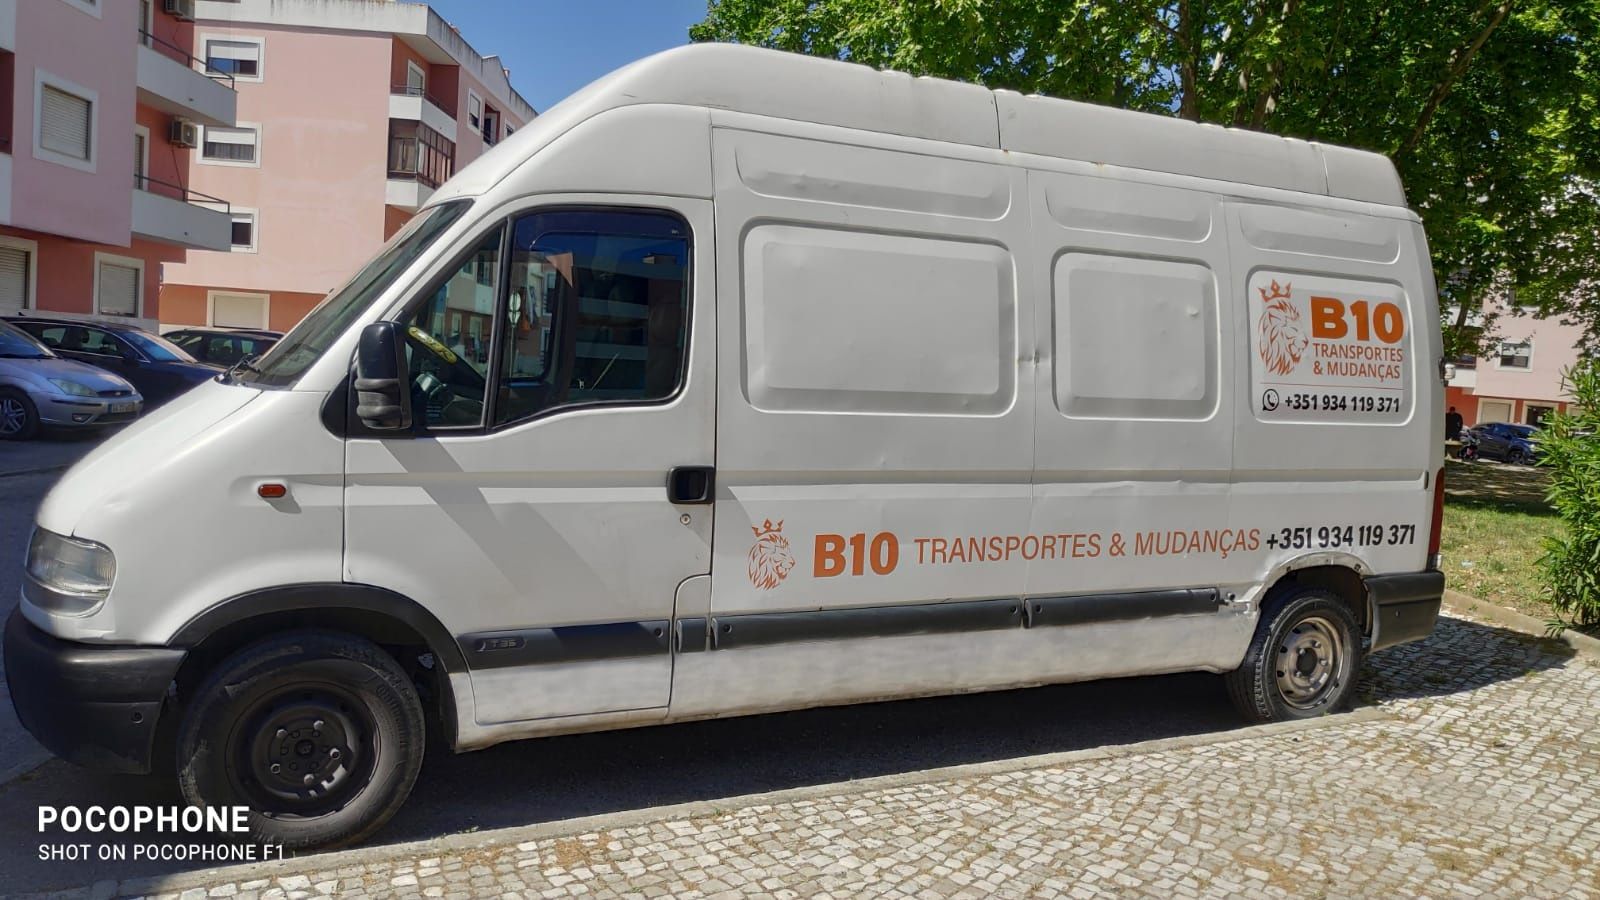 Transporte & Mudanças low cost B10 logística